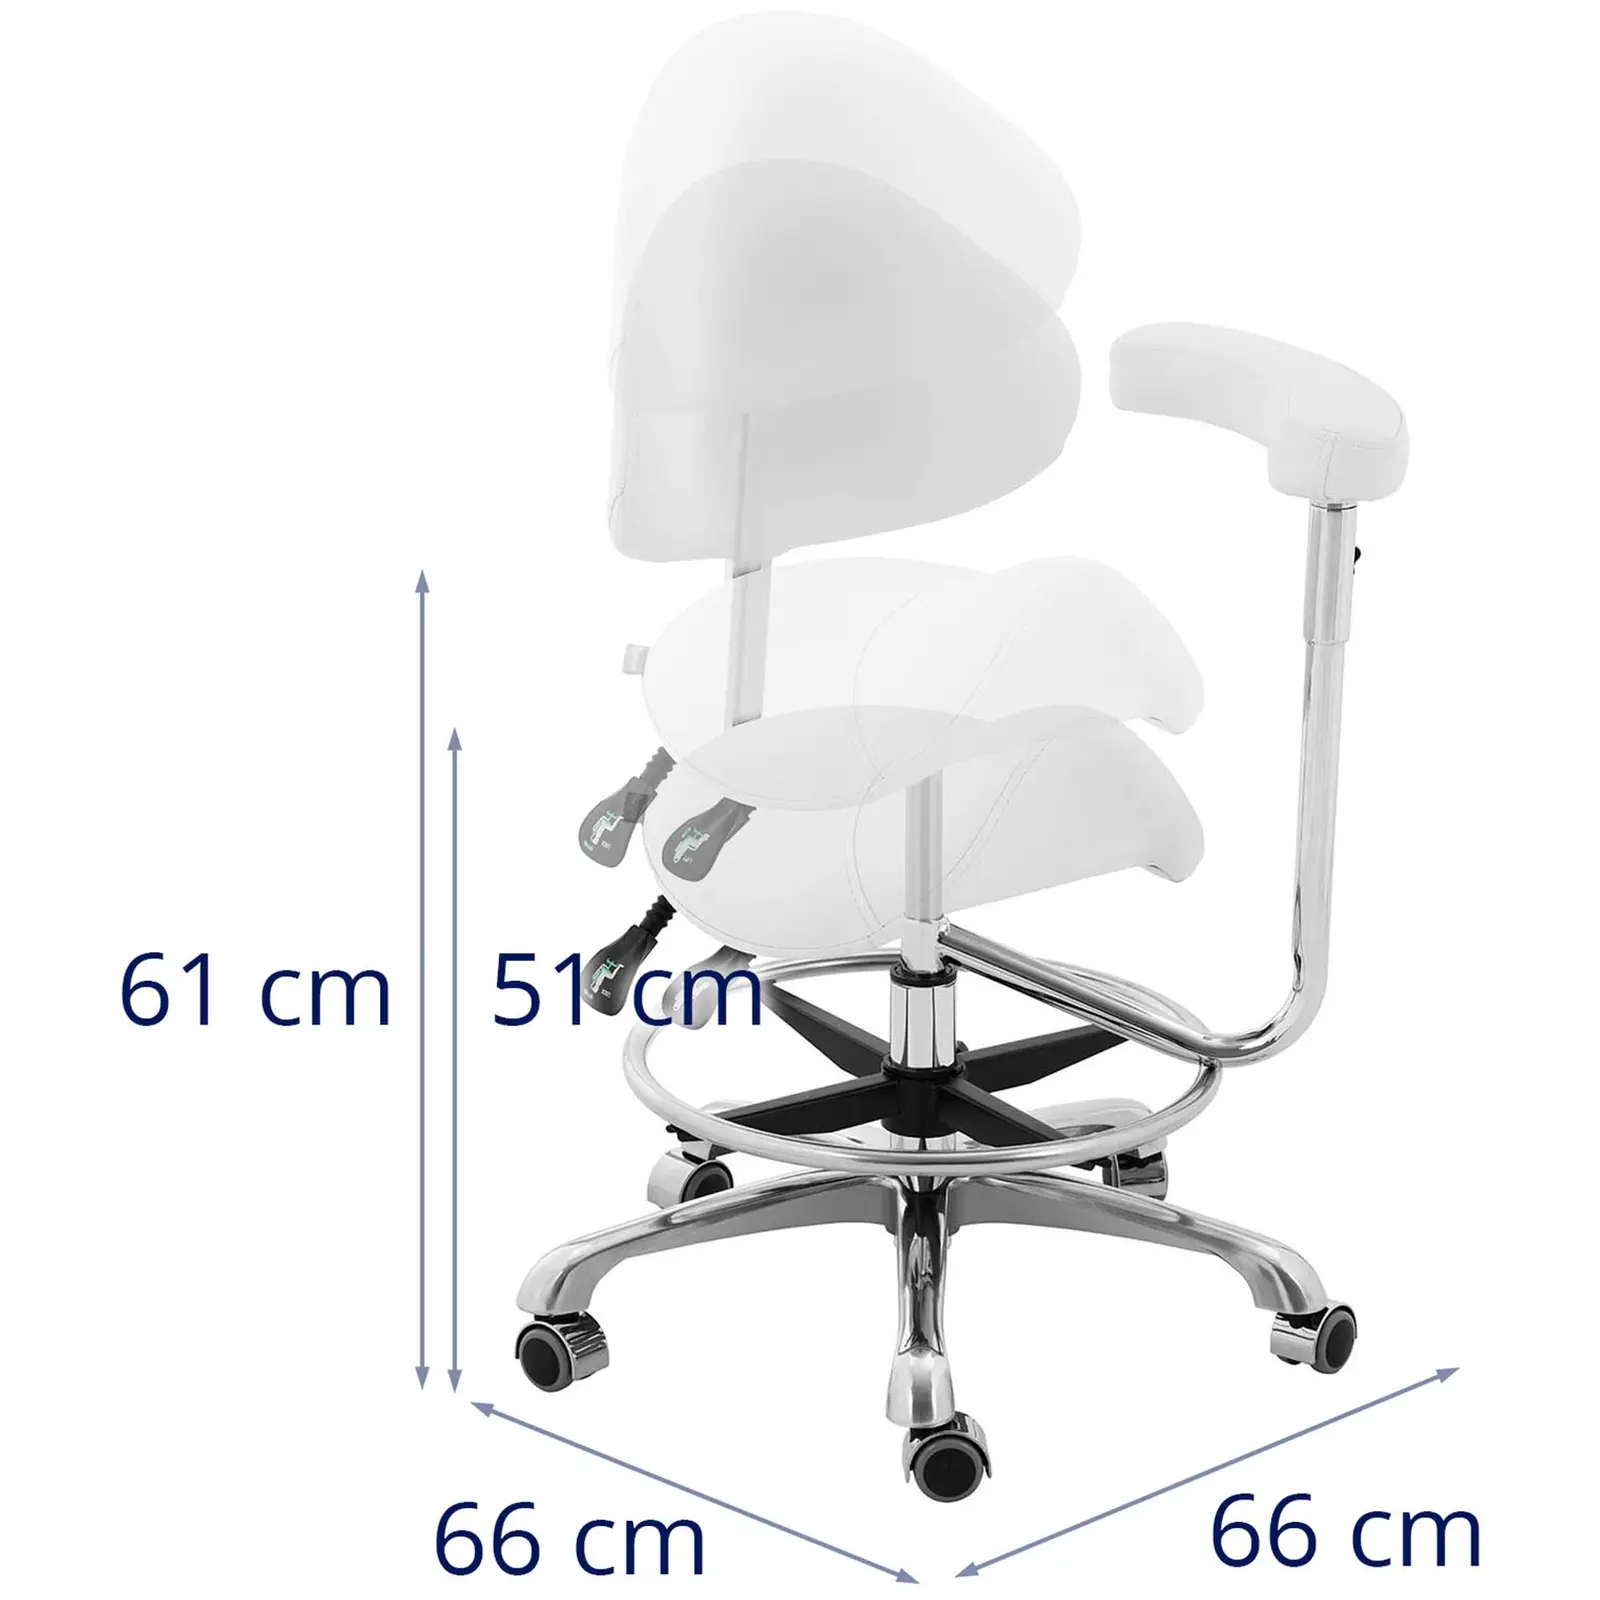 Sedlasti stol z naslonom za roke - nastavljiva višina naslona in sedeža - 51 - 61 cm - 150 kg - Bela